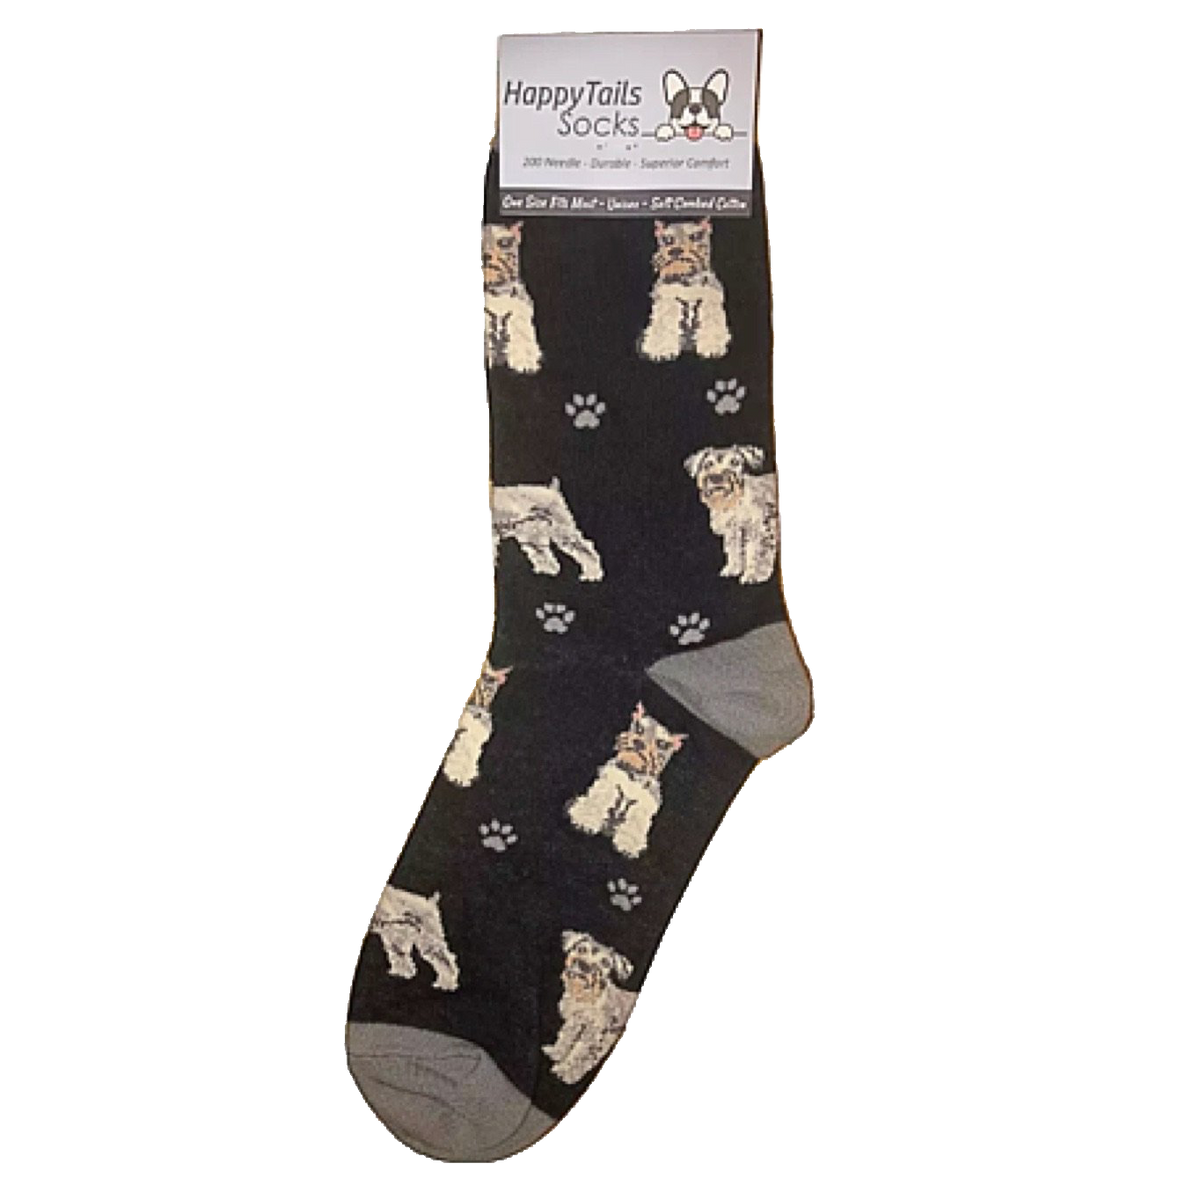 Schnauzer Dog Socks